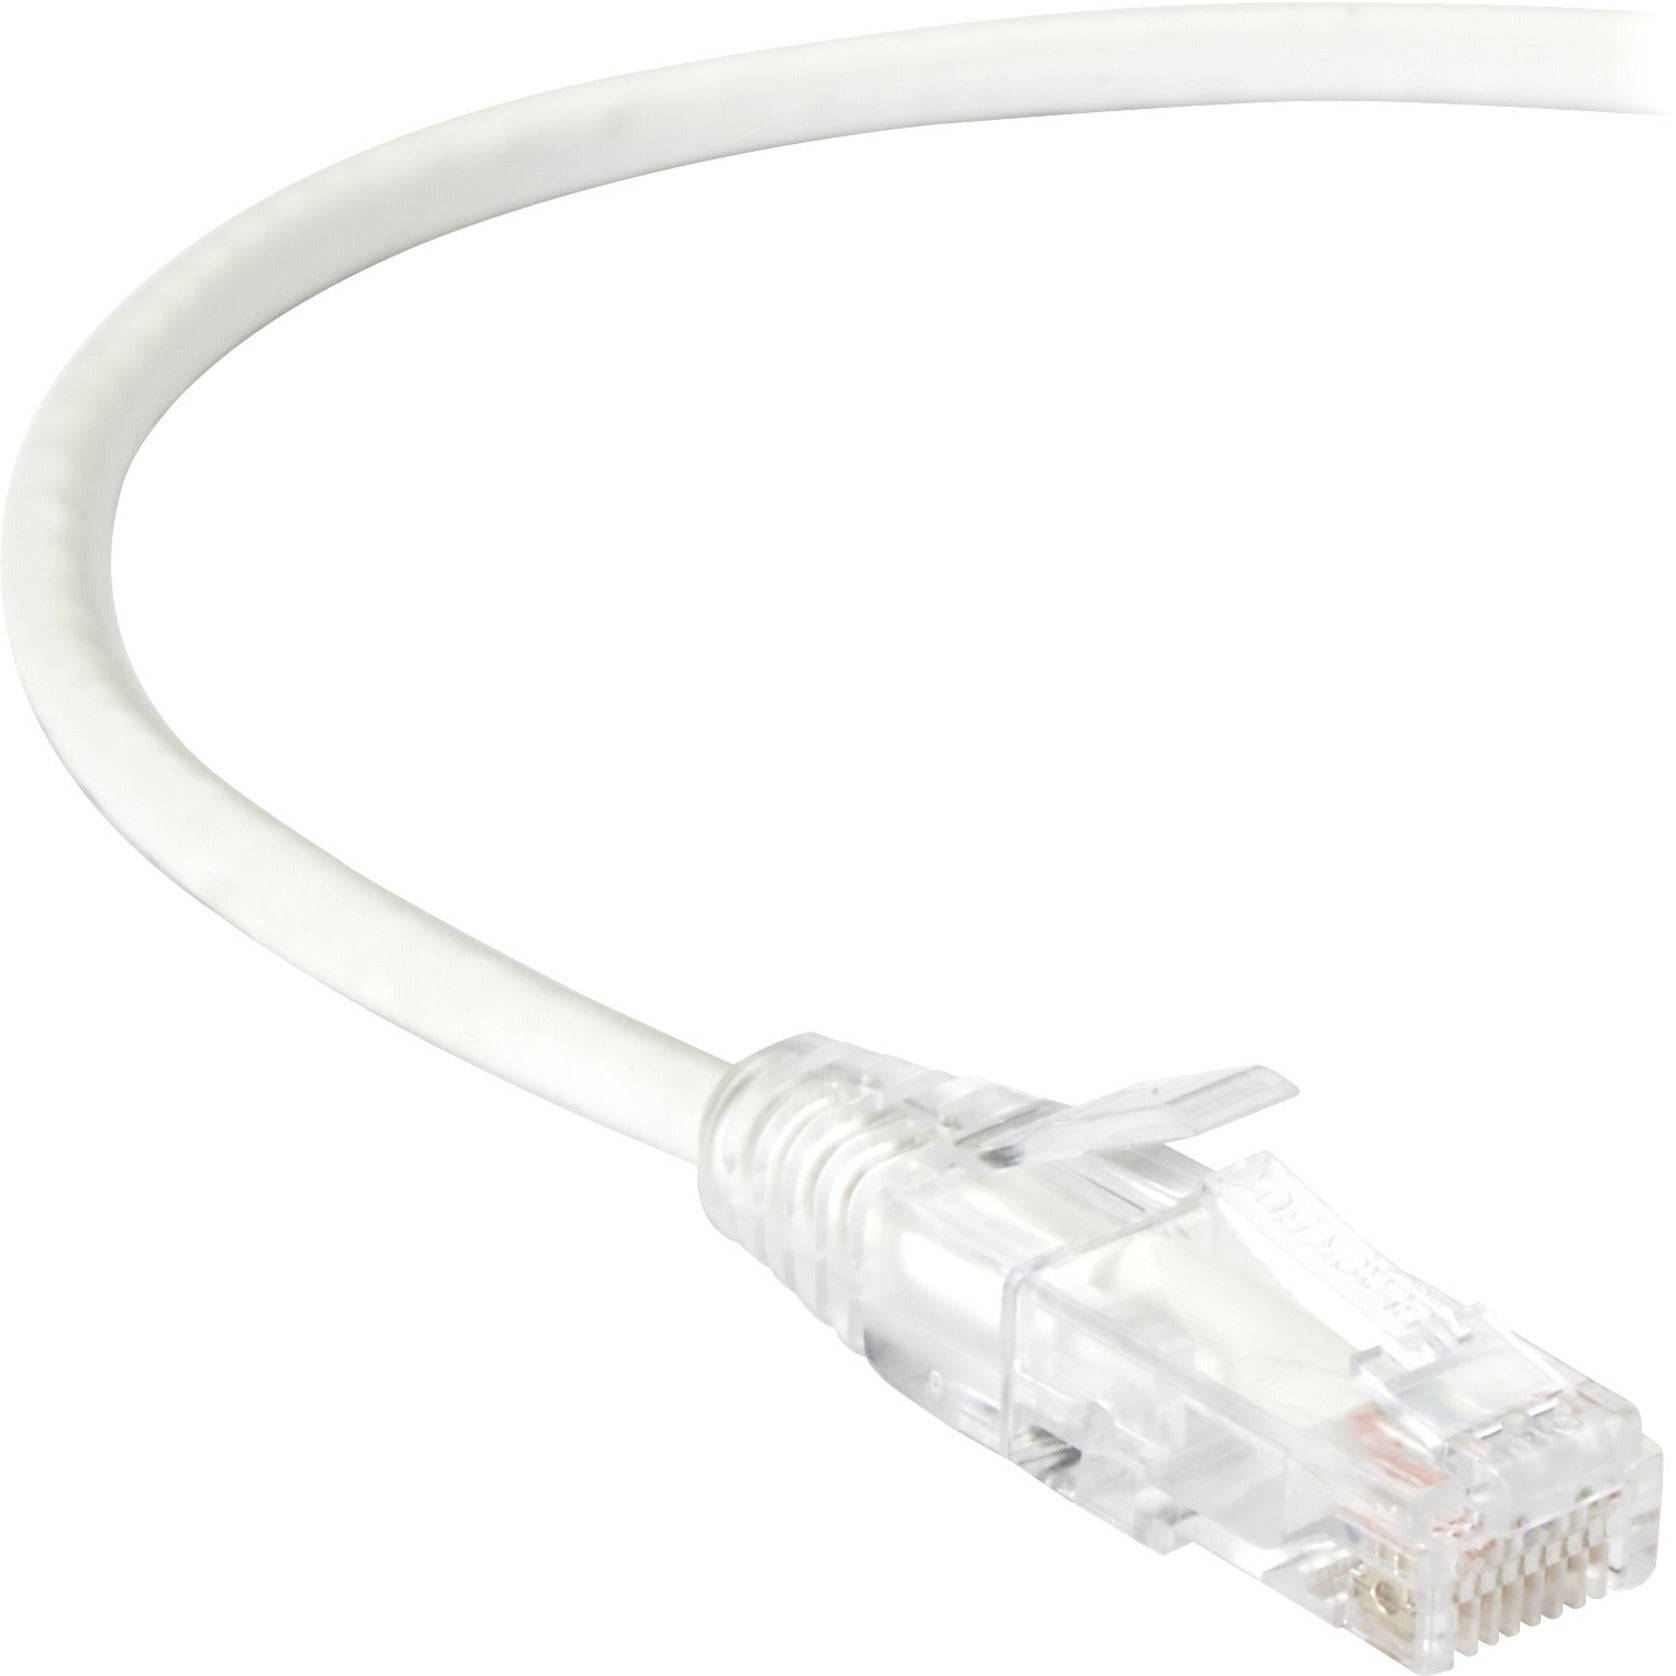 블랙박스 C6PC28-WH-04 슬림-넷 Cat.6 UTP 패치 네트워크 케이블 4 ft 스내글리스 부트 10 Gbit/s 데이터 전송 속도